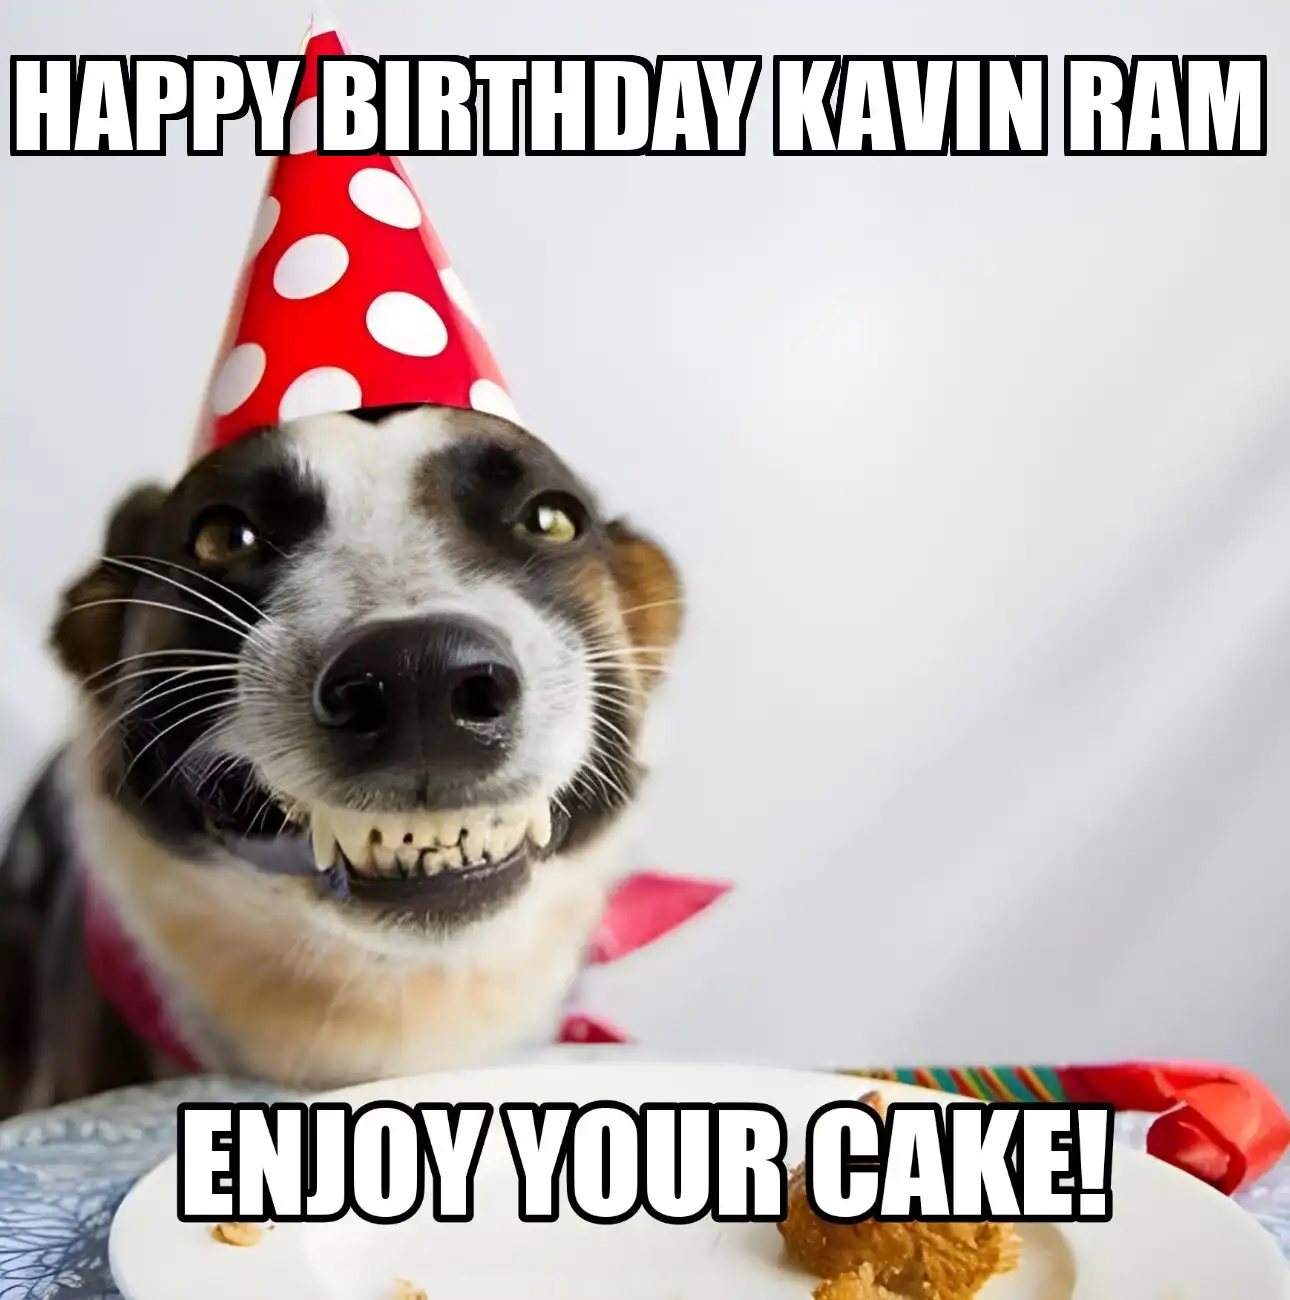 Happy Birthday Kavin Ram Enjoy Your Cake Dog Meme